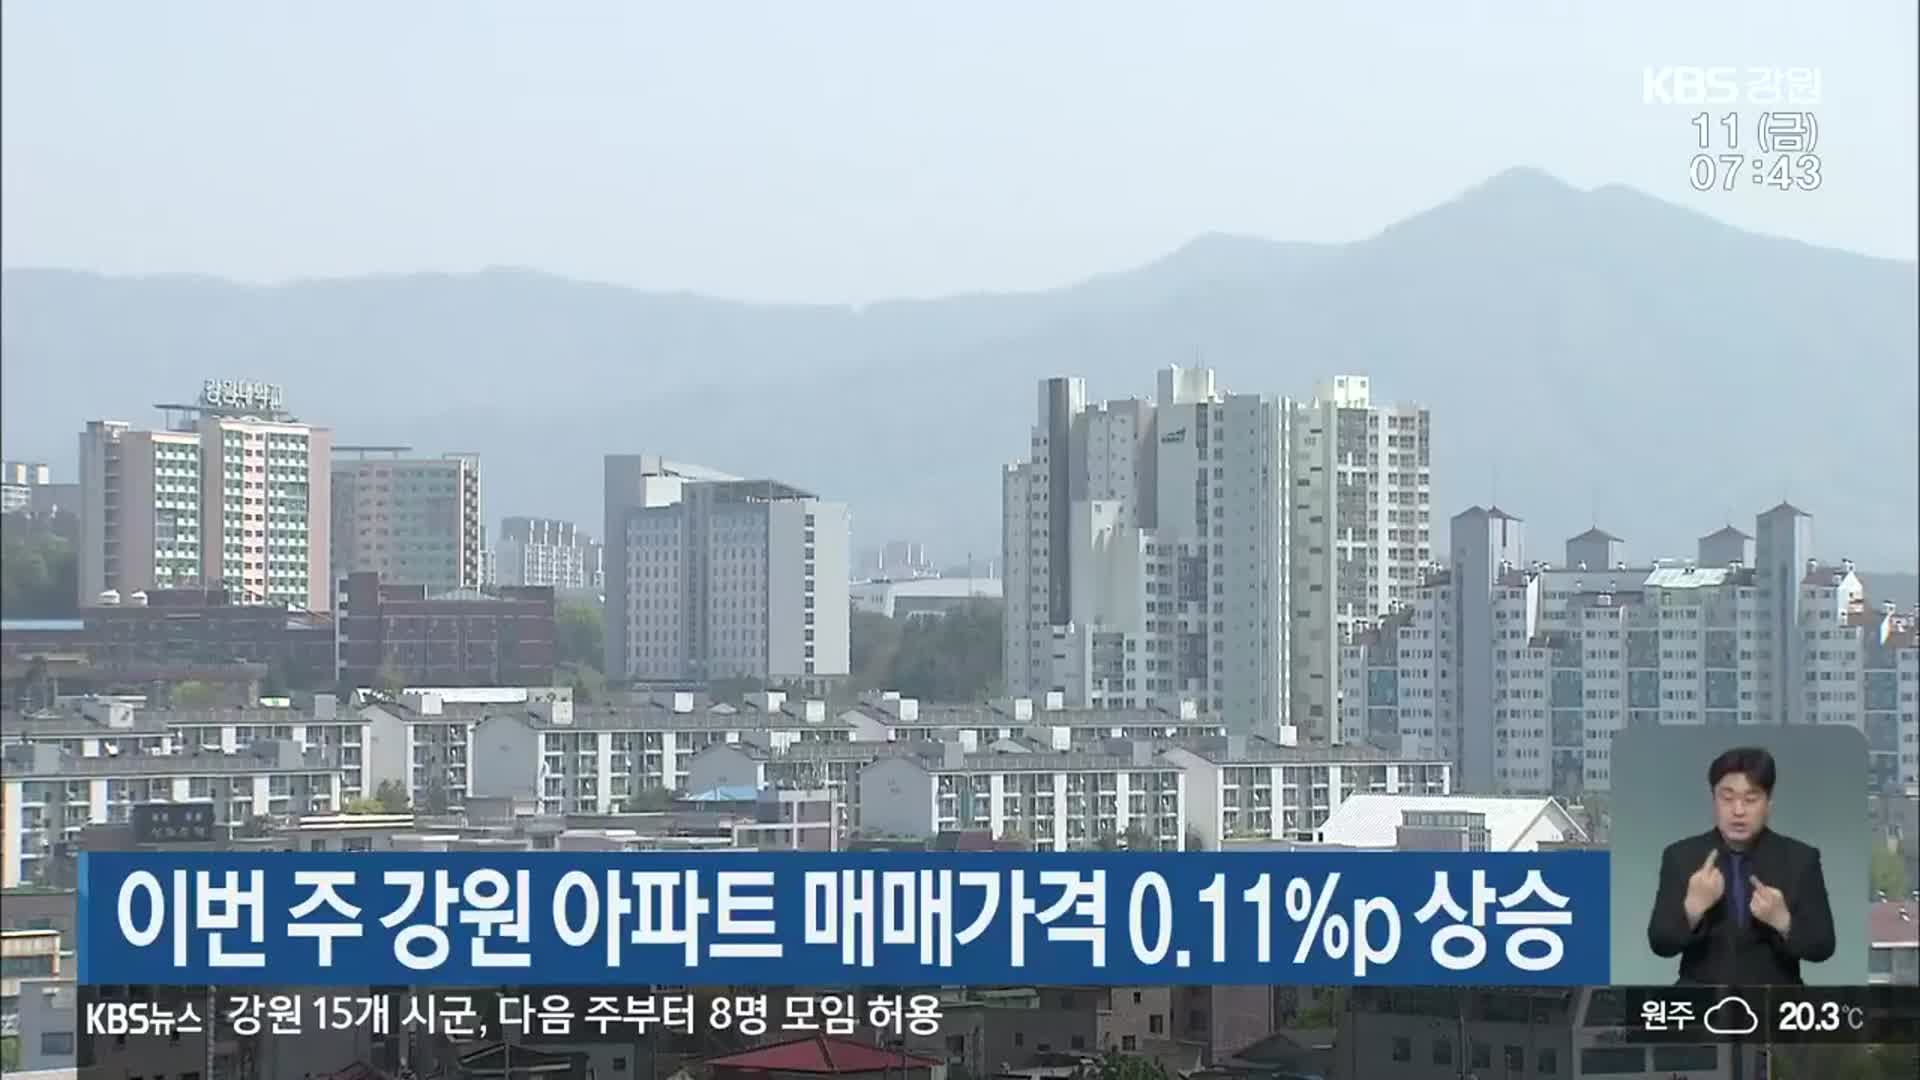 이번 주 강원 아파트 매매가격 0.11%p 상승